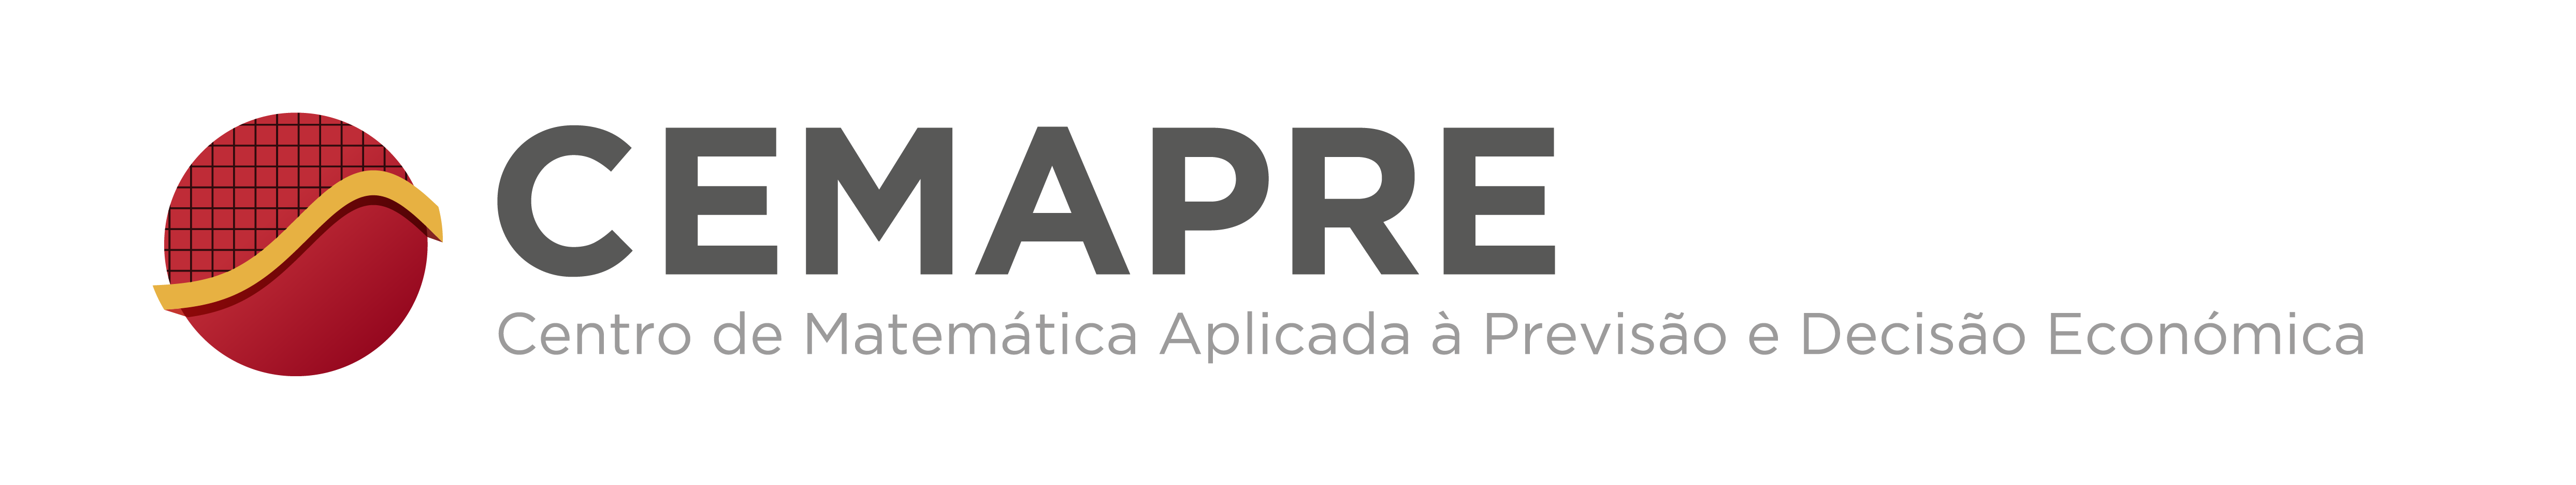 Cemapre_Logo